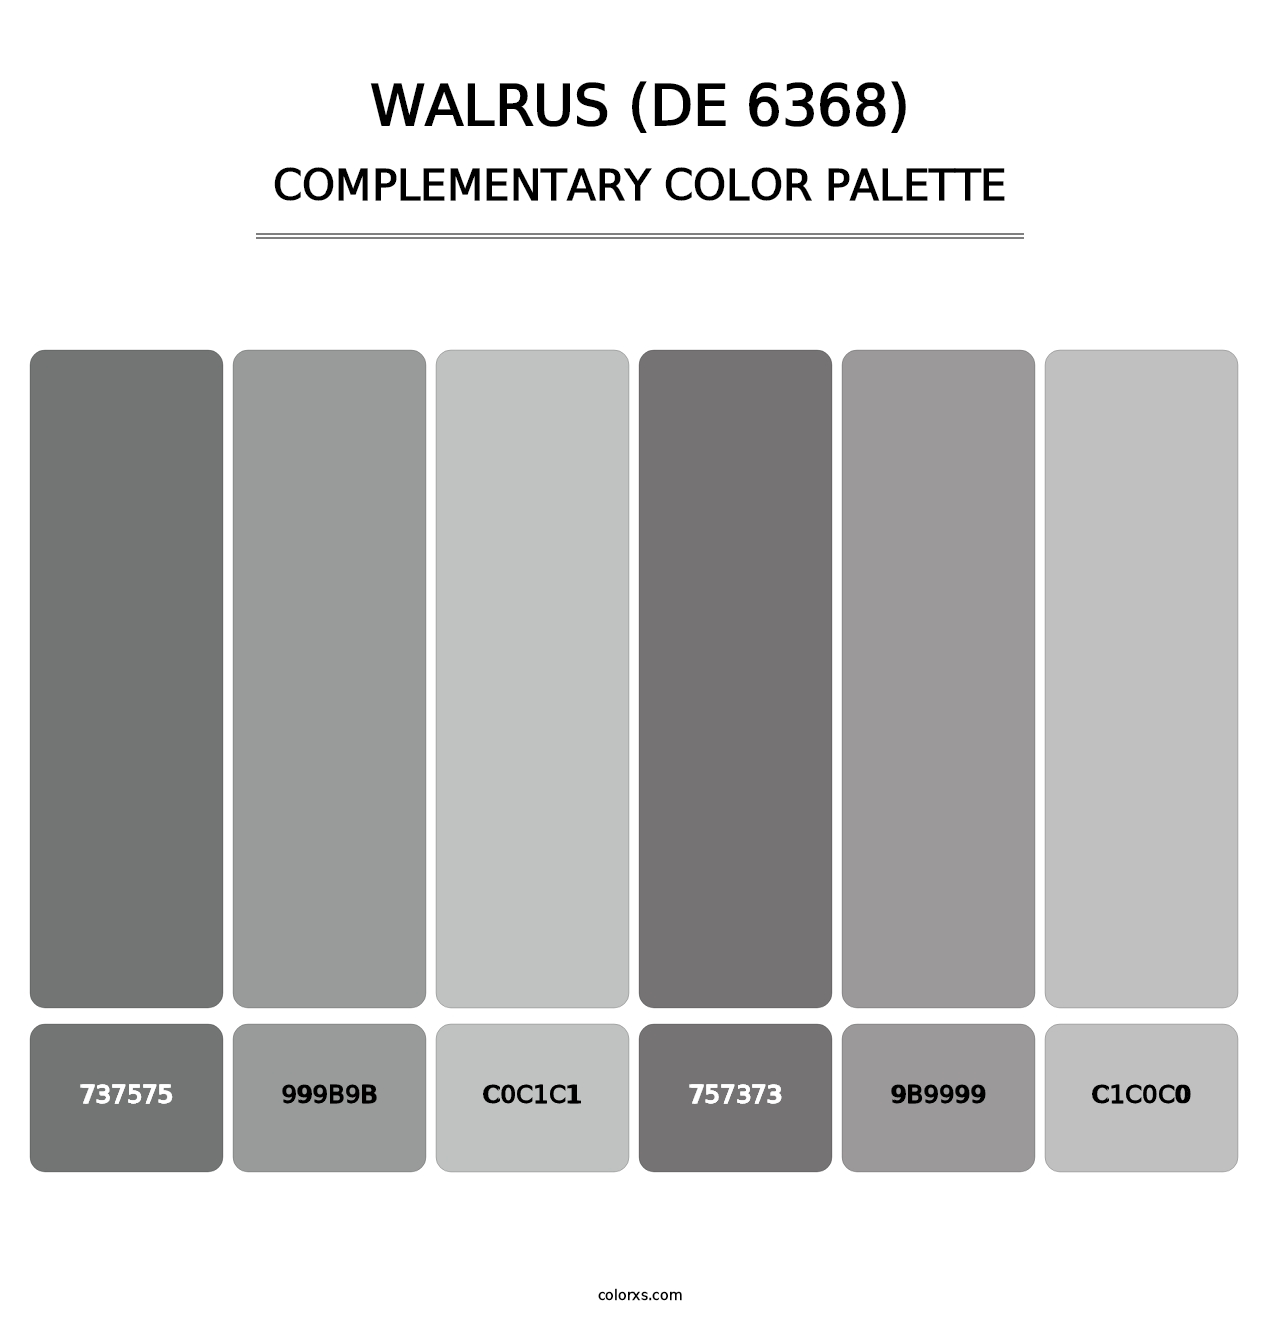 Walrus (DE 6368) - Complementary Color Palette